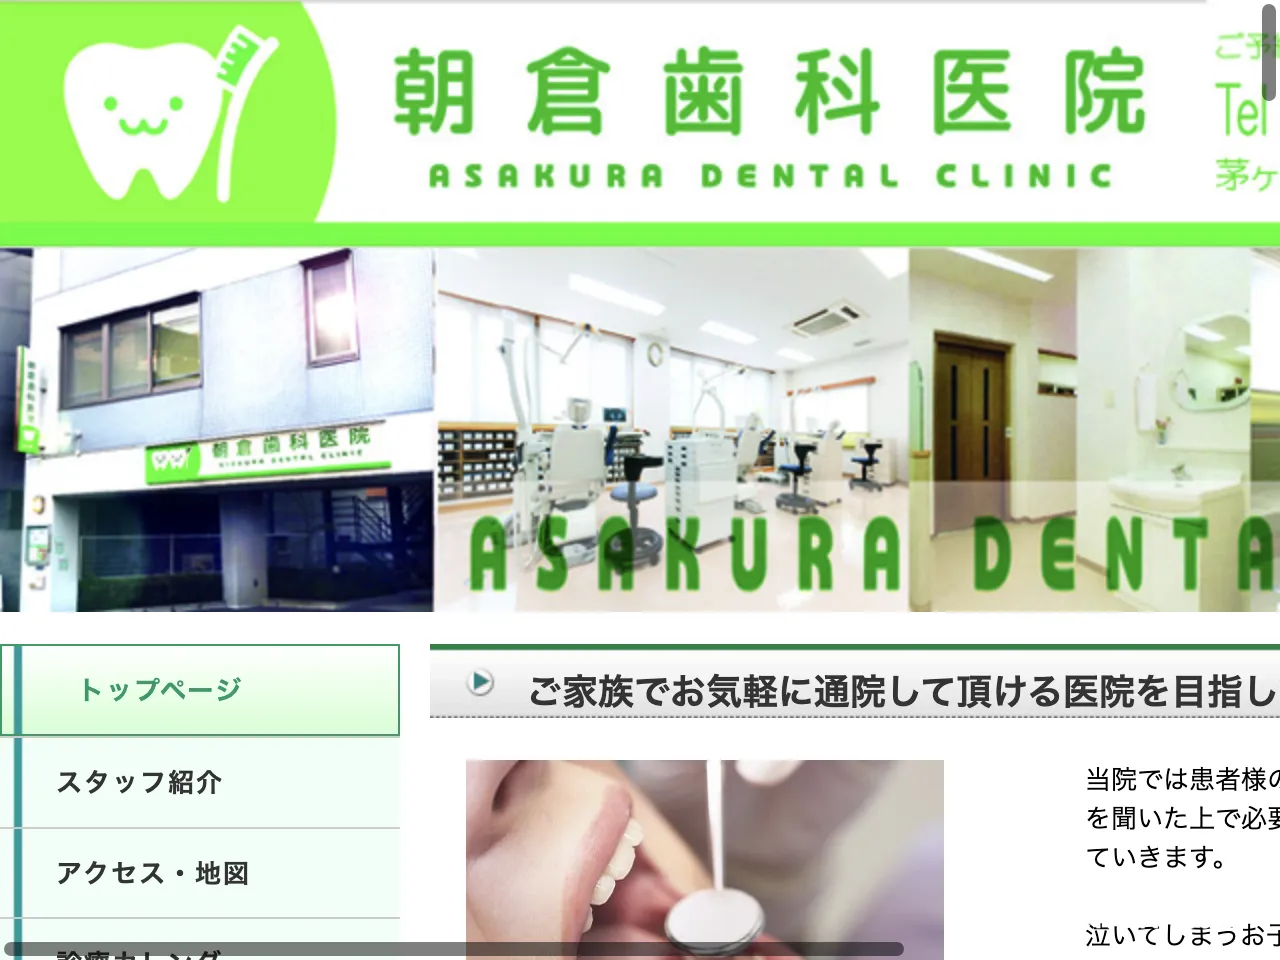 朝倉歯科医院のウェブサイト